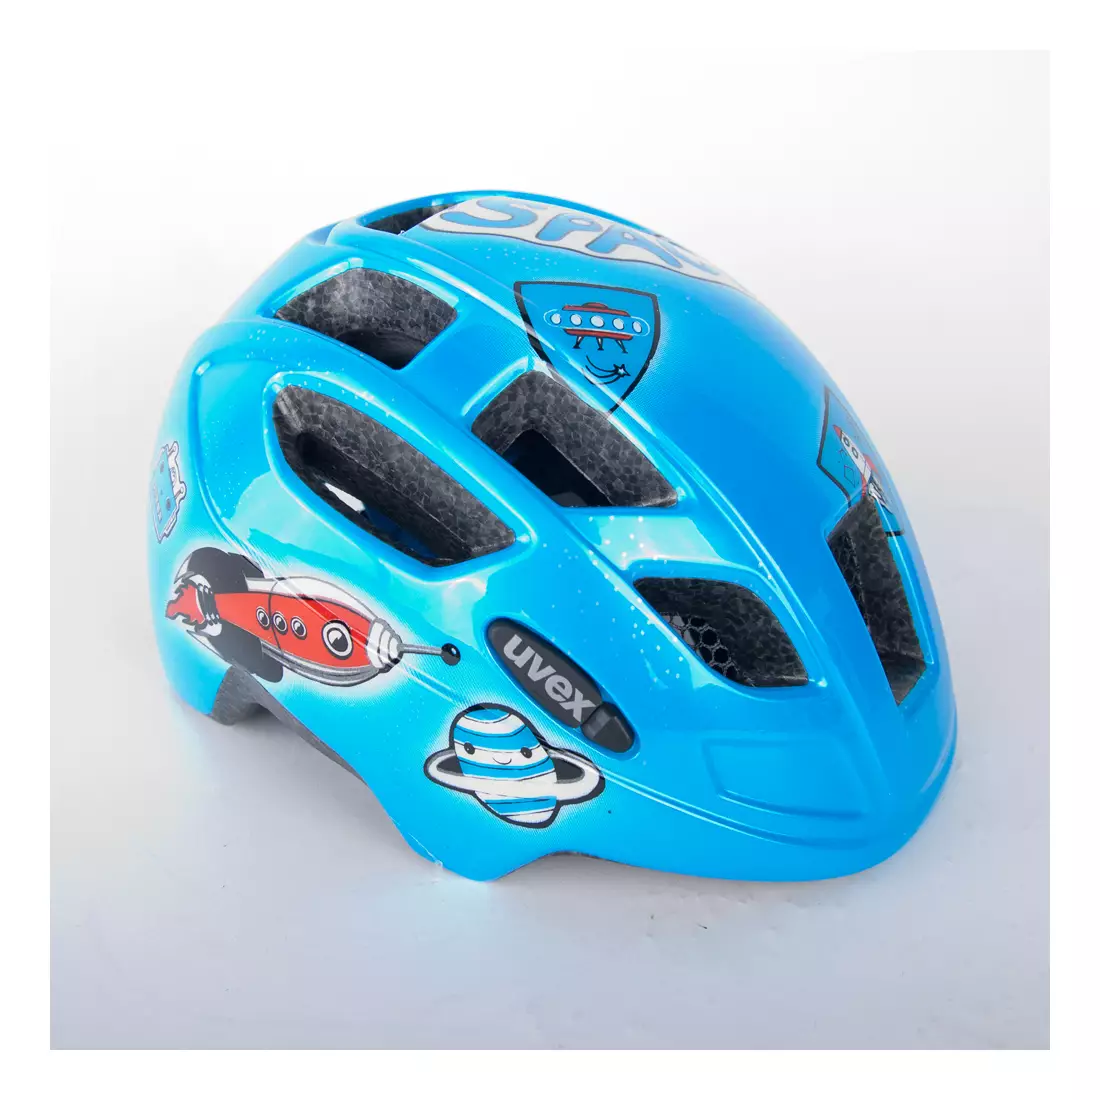 UVEX FINALE JUNIOR SPACE ROCKET bicycle helmet